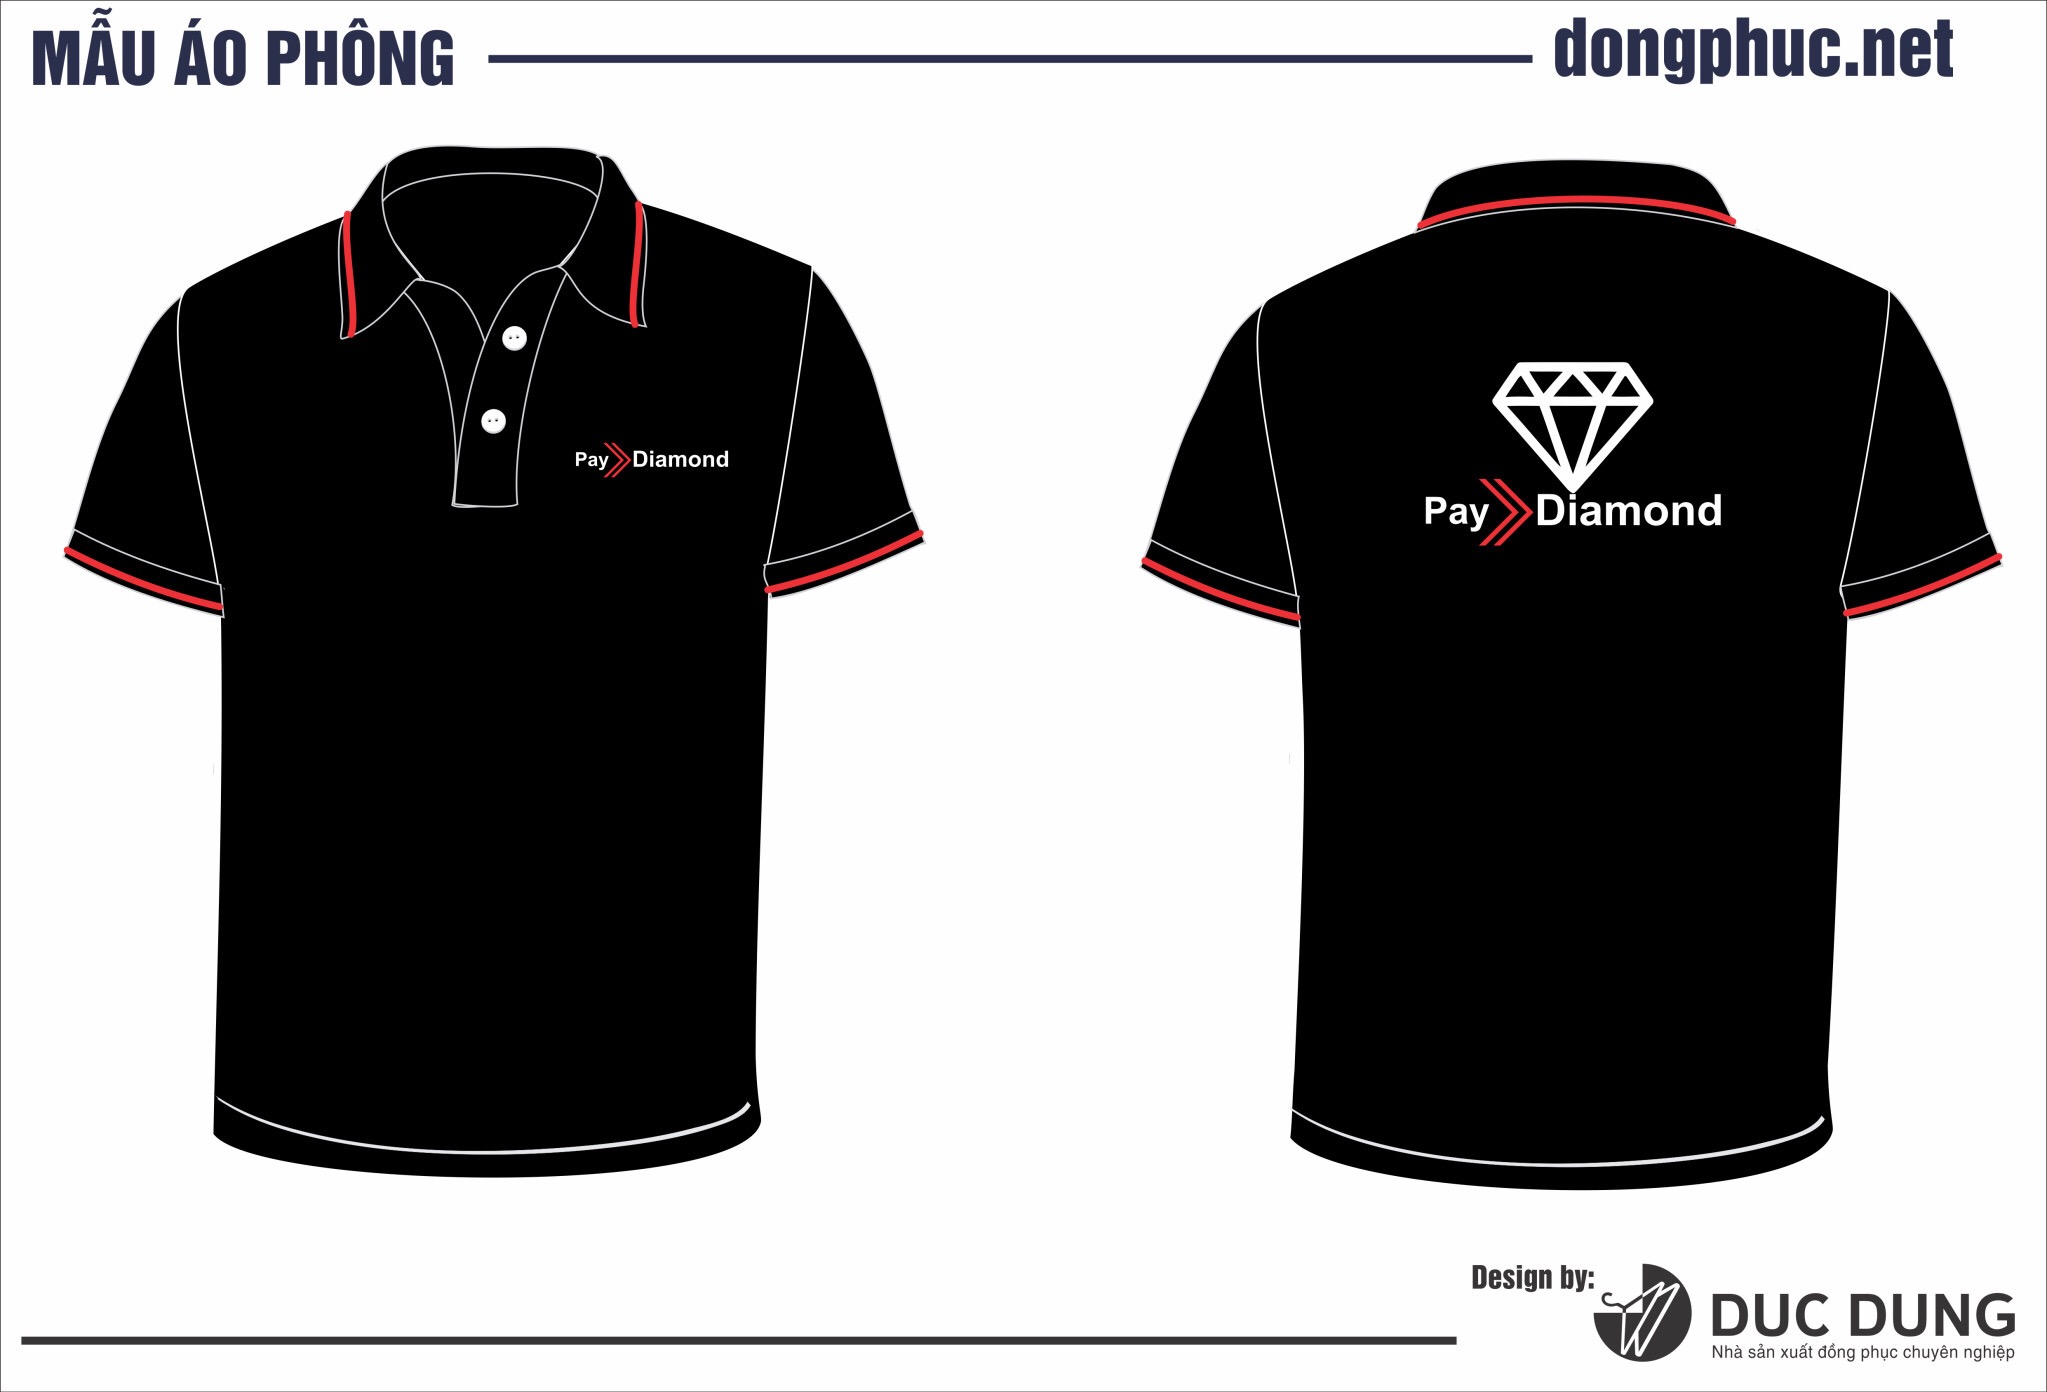 Áo đồng phục Pay Diamond màu đen | Ao dong phuc Pay Diamond